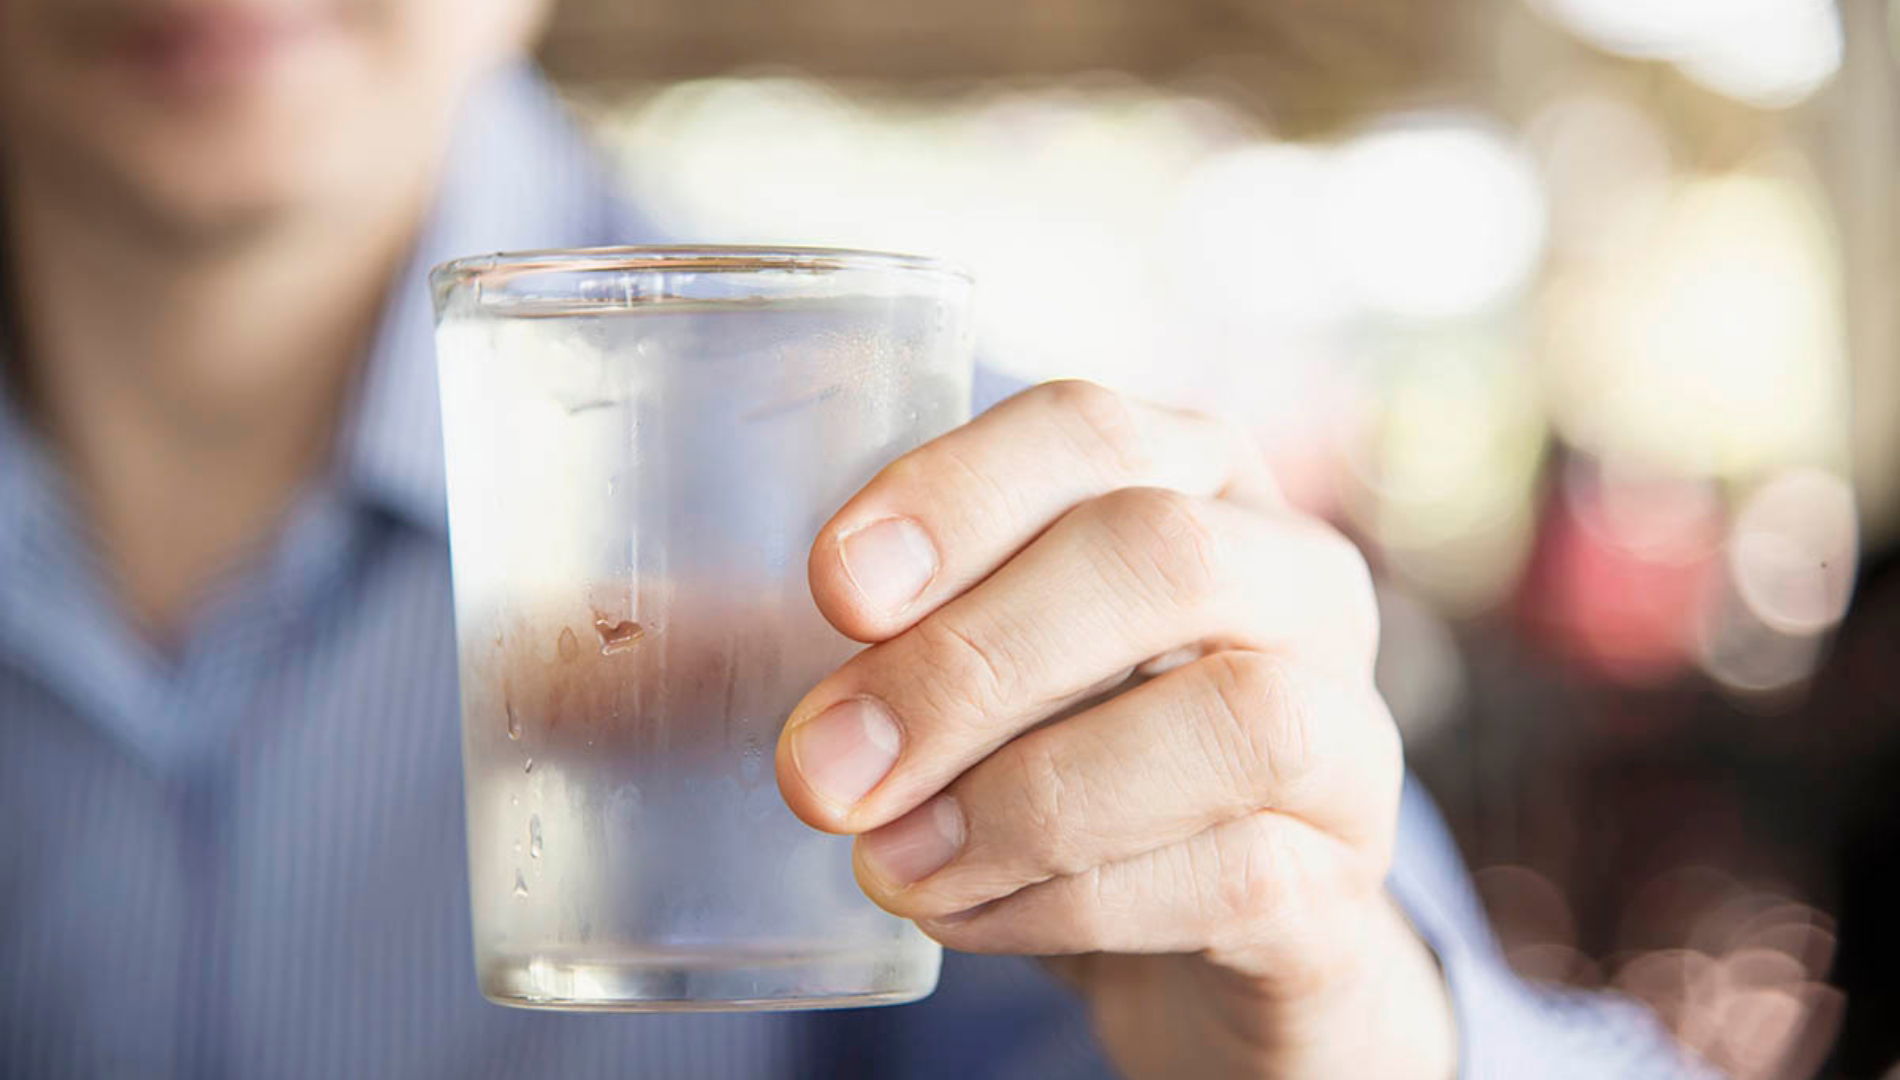 تسبب مرض قاتل.. 5 عادات خاطئة عليك تجنبها عند شرب الماء